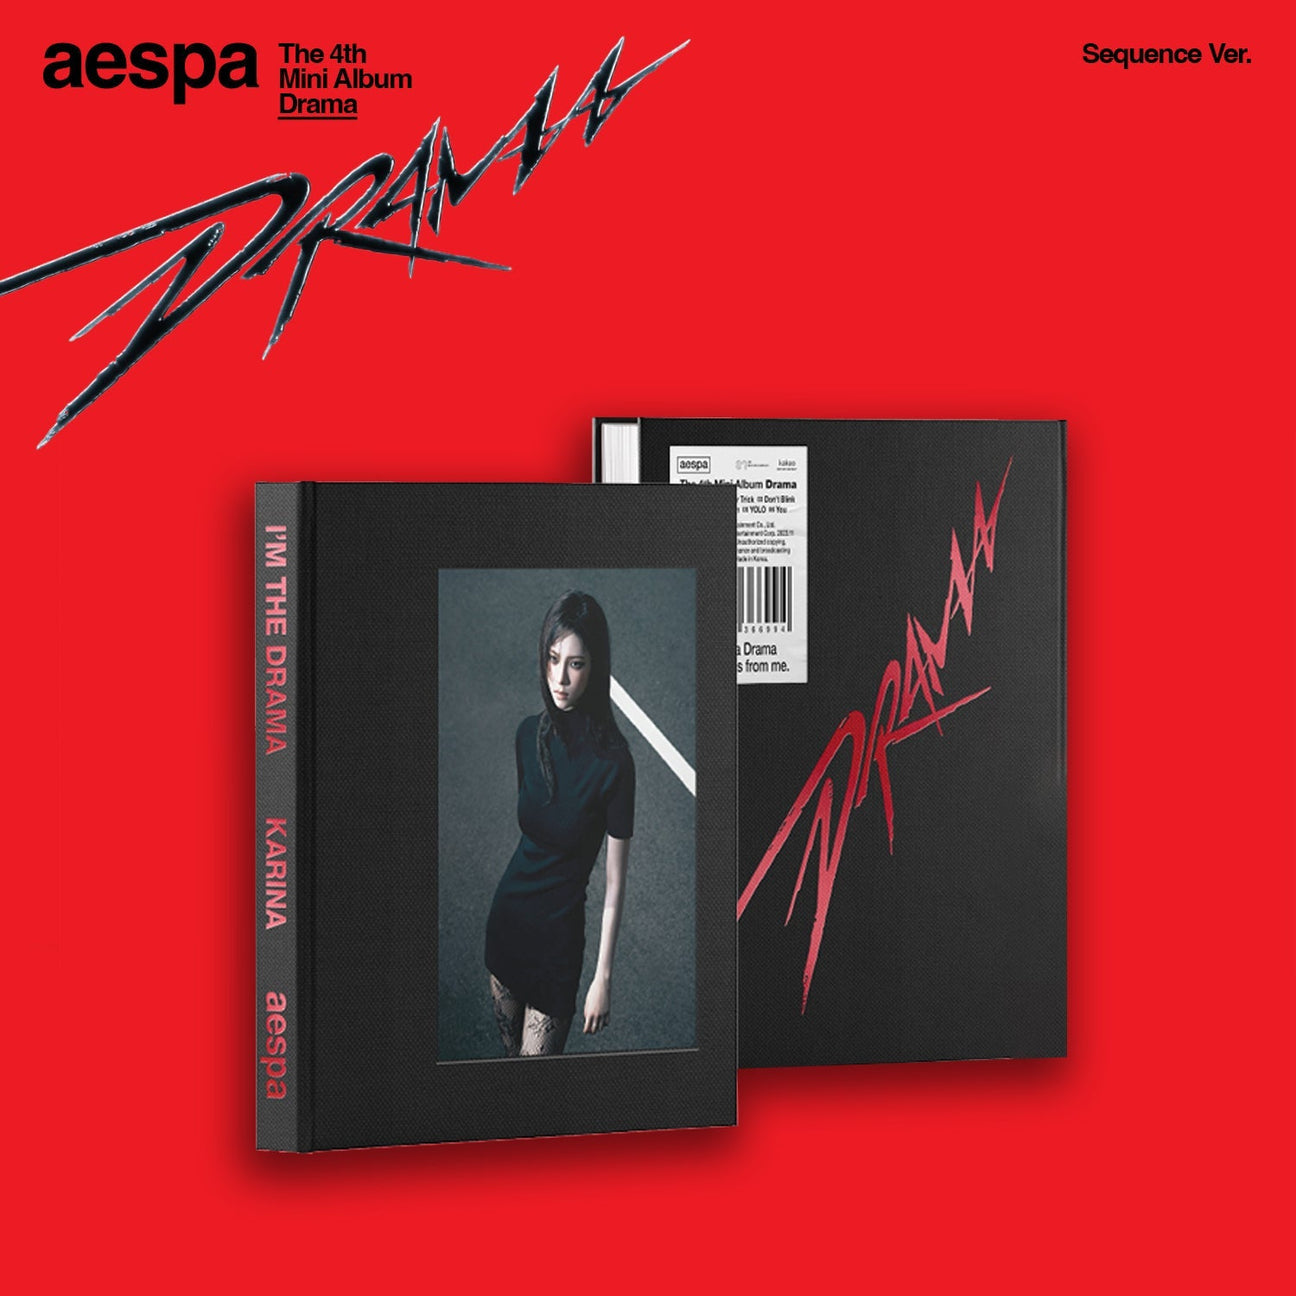 aespa - 4th Mini-Album 'DRAMA' (SEQUENCE Version)